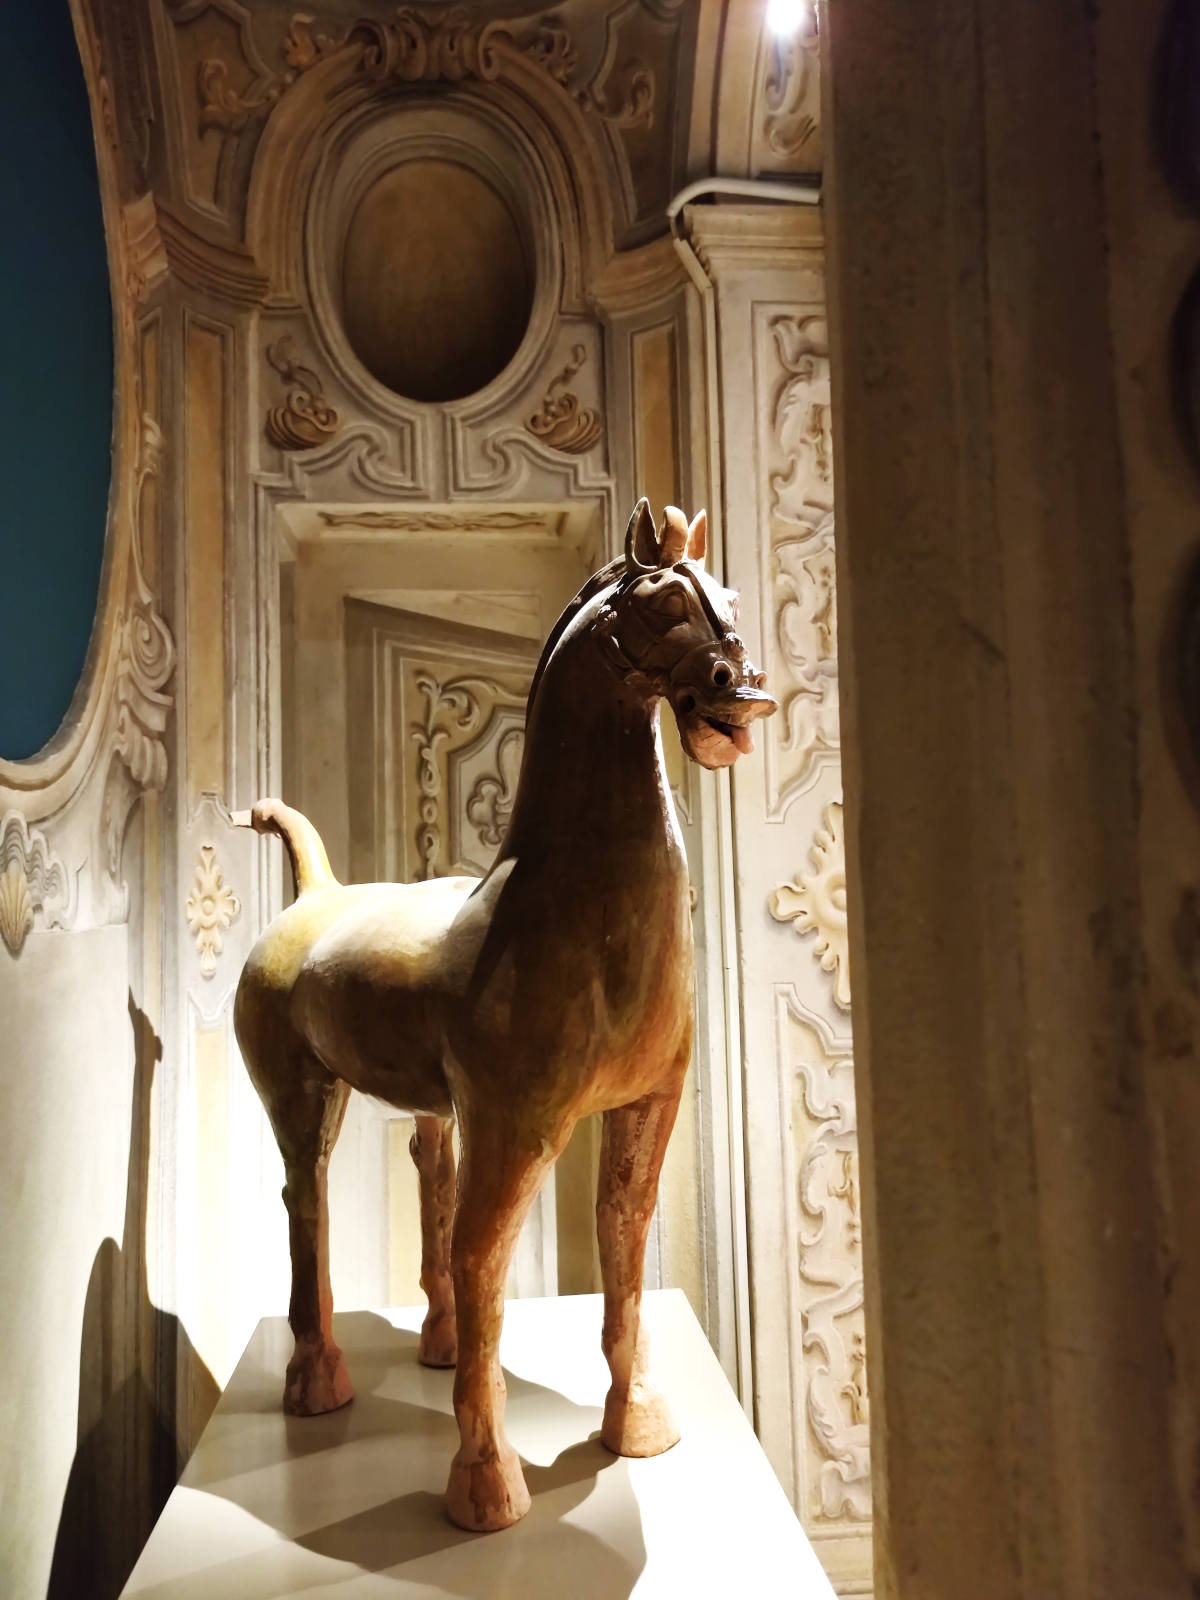 Cosa vedere al Museo D'Arte Orientale di Torino (MAO): Statua in terracotta del cavallo con il ciuffo e corta criniera - Galleria cinese